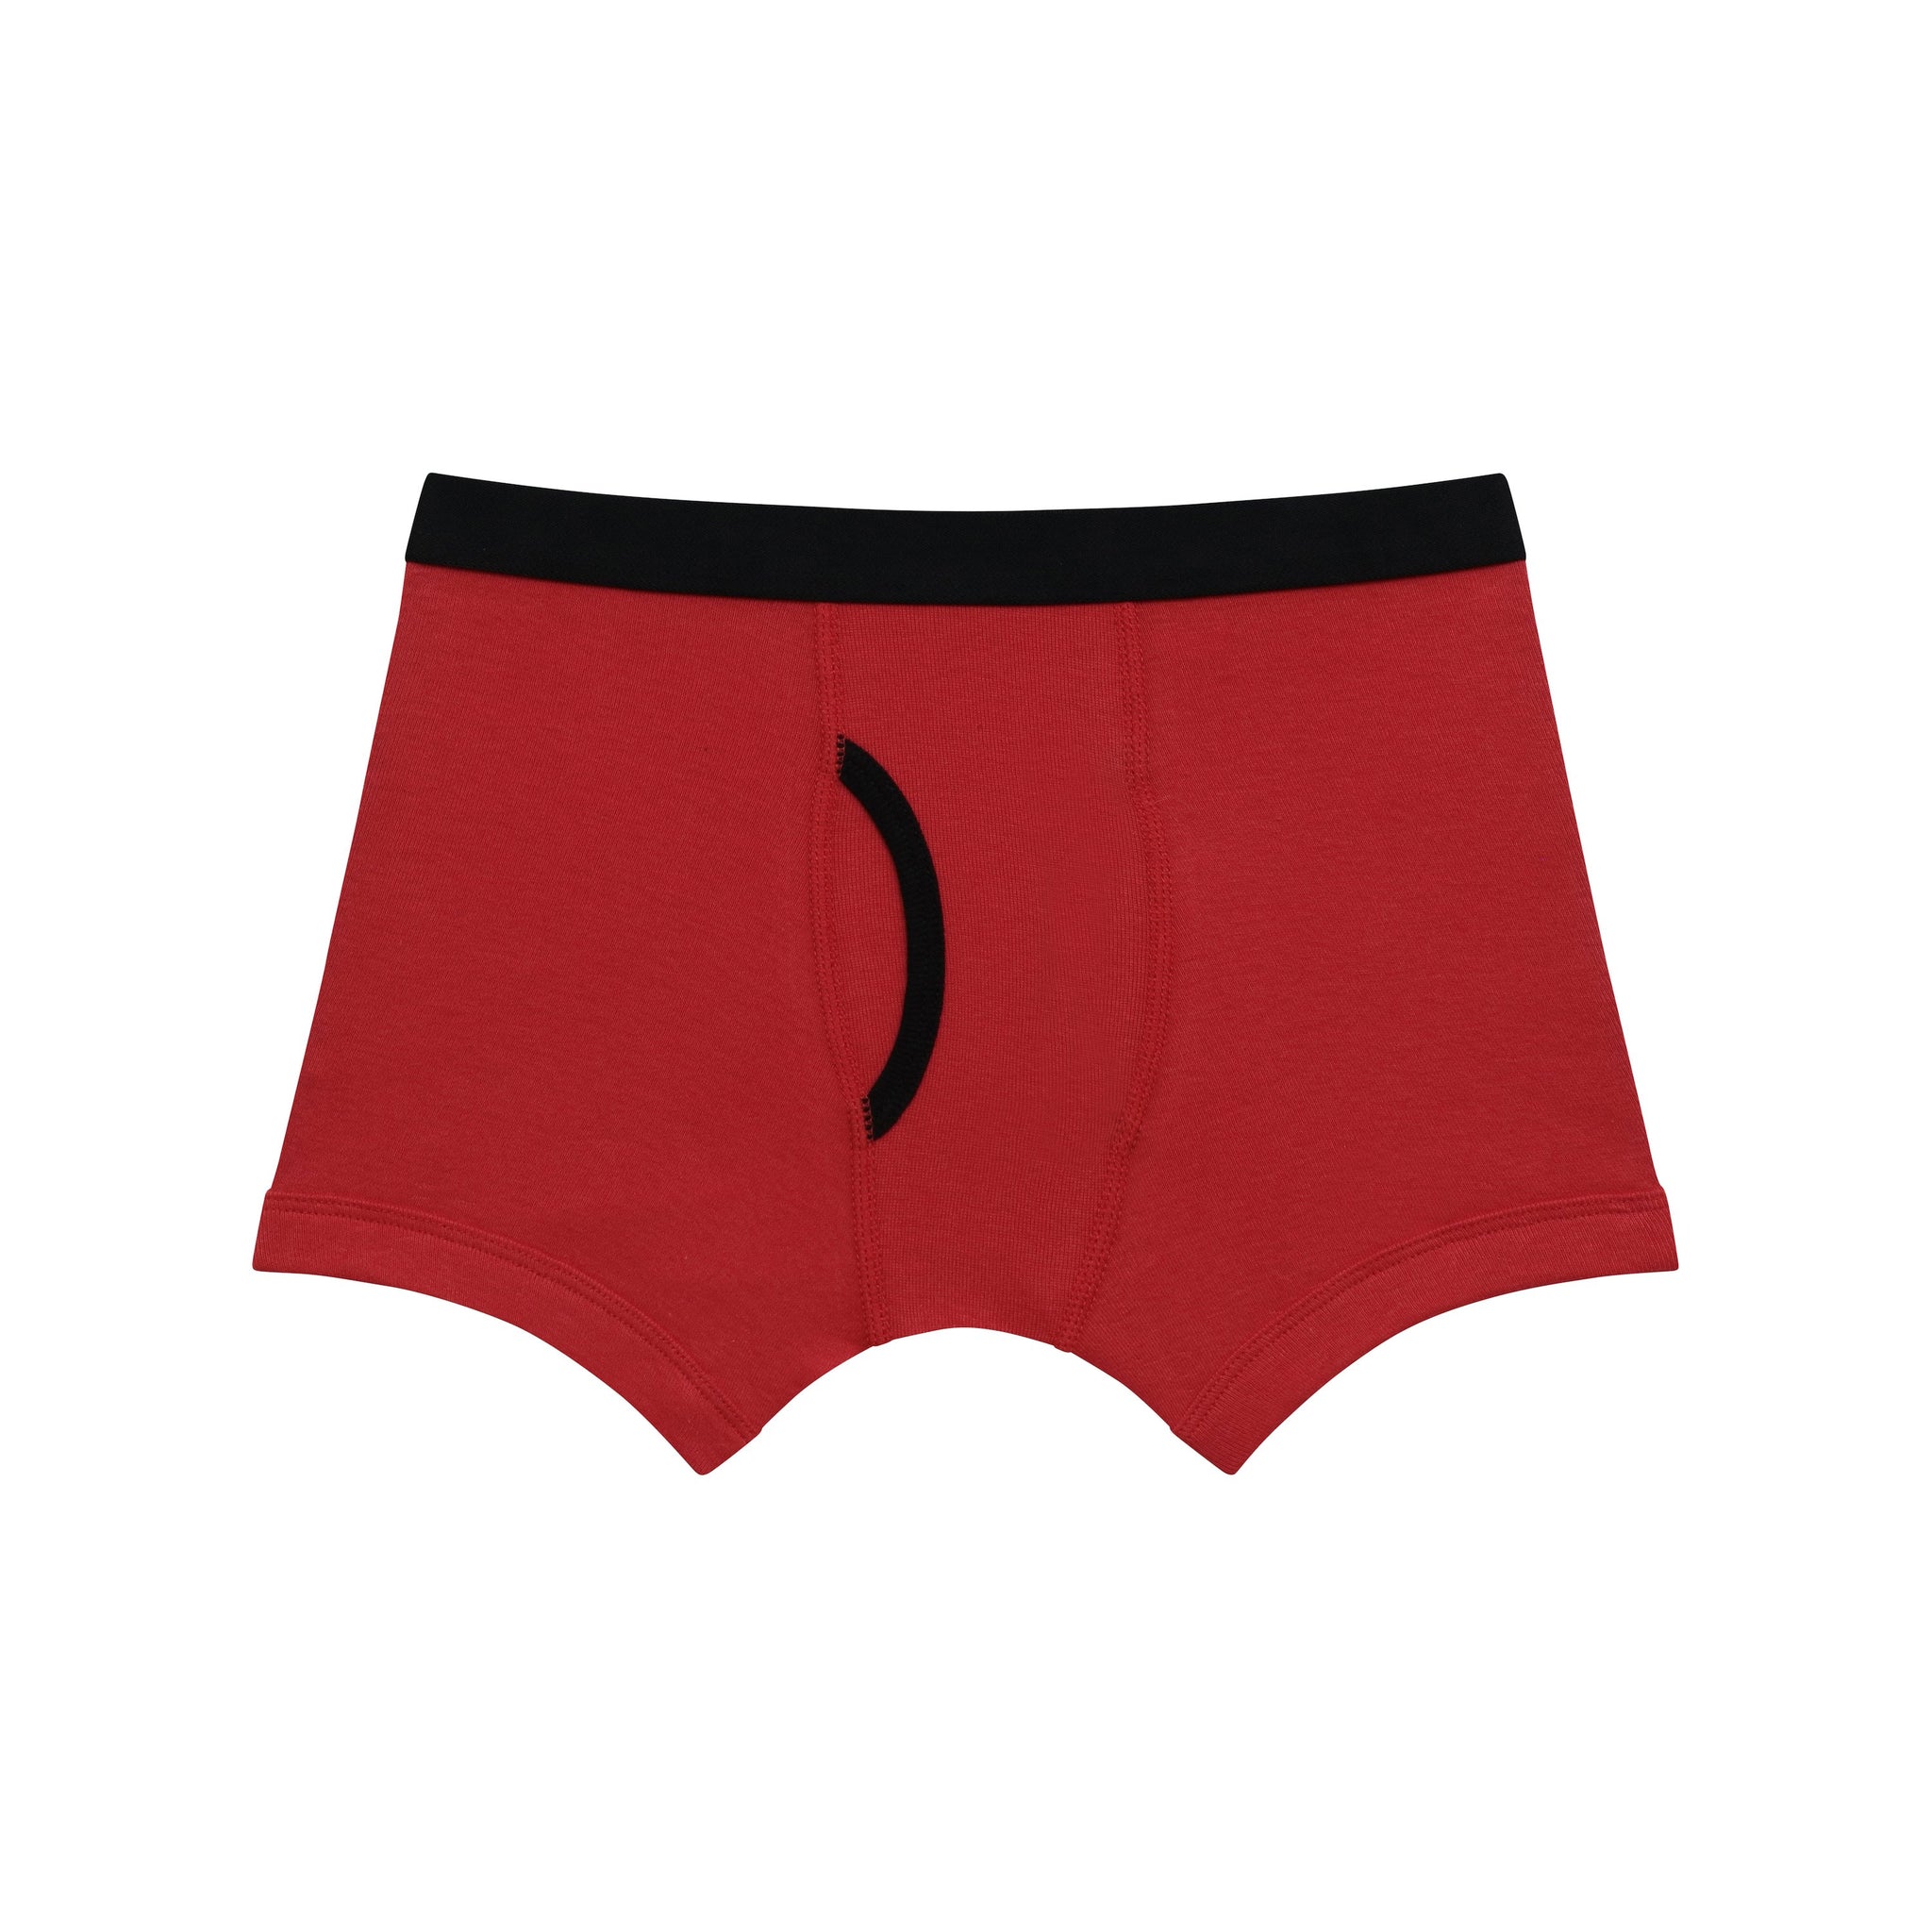 Mallary by Matthew 100% Cotton Boys Boxer Briefs Underwear 4-Pack#N ...